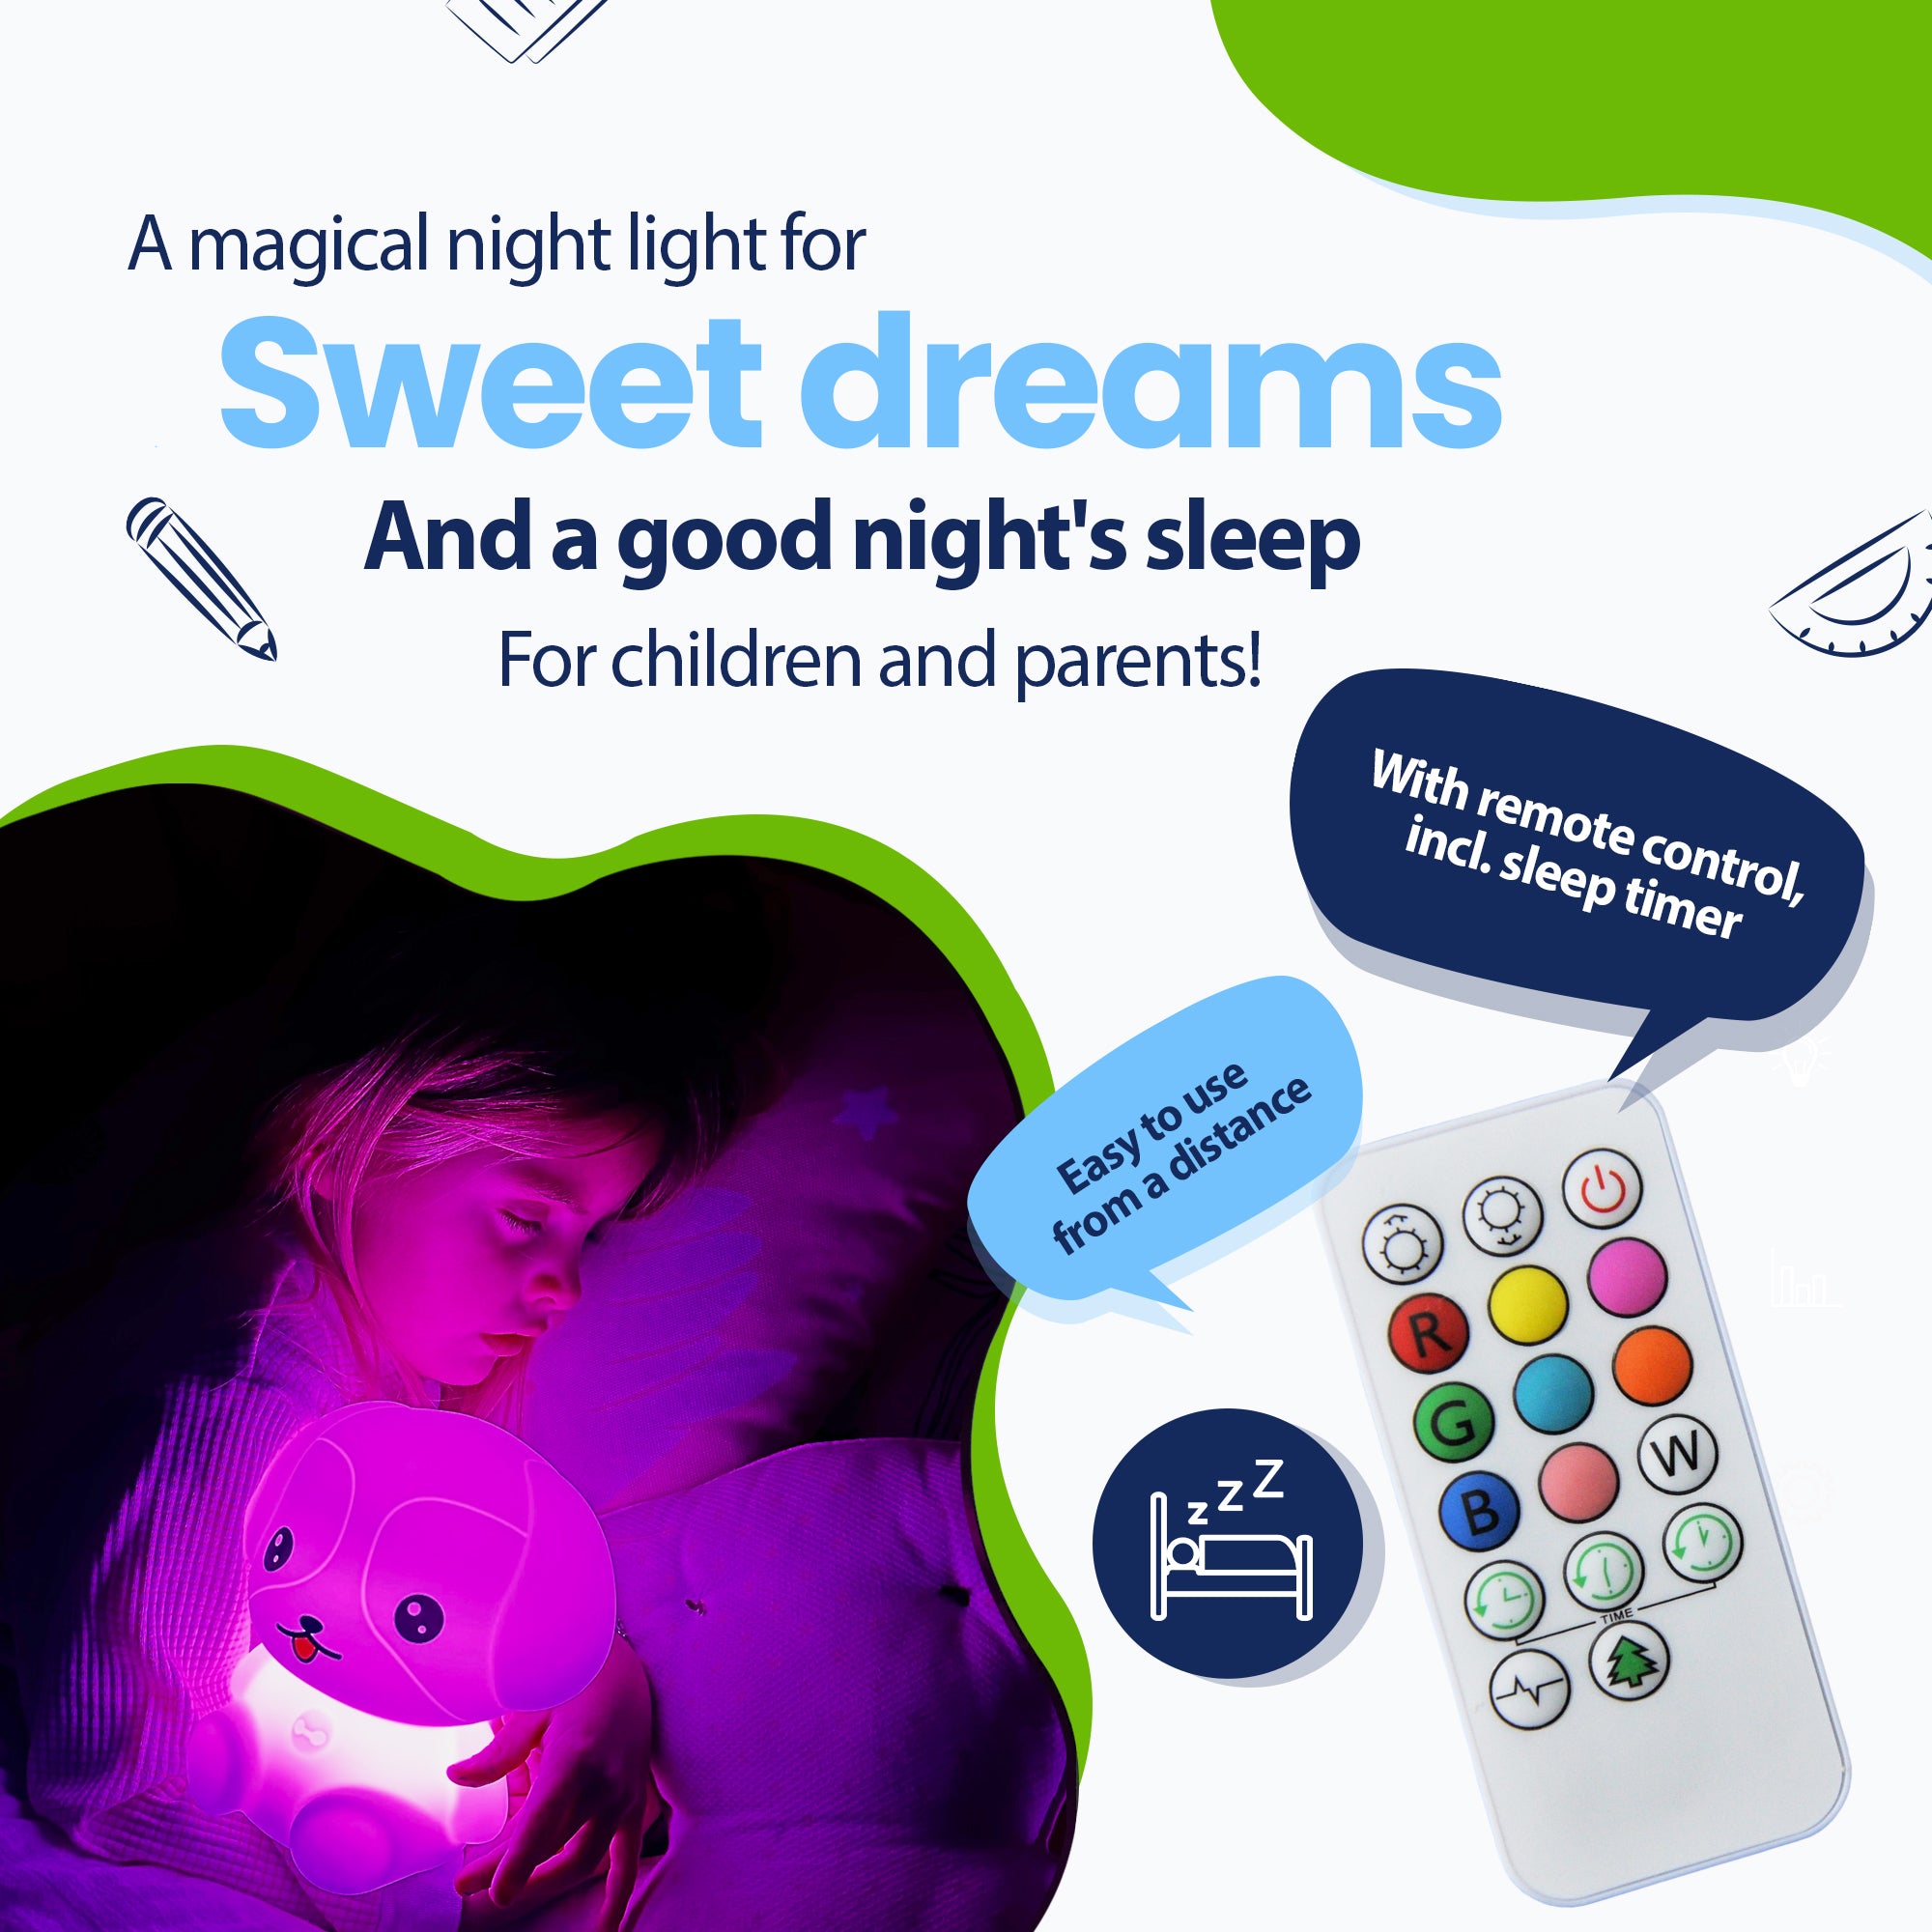 Una luz nocturna mágica para dulces sueños y un sueño reparador para niños y padres, con control remoto que incluye temporizador para dormir, fácilmente a distancia